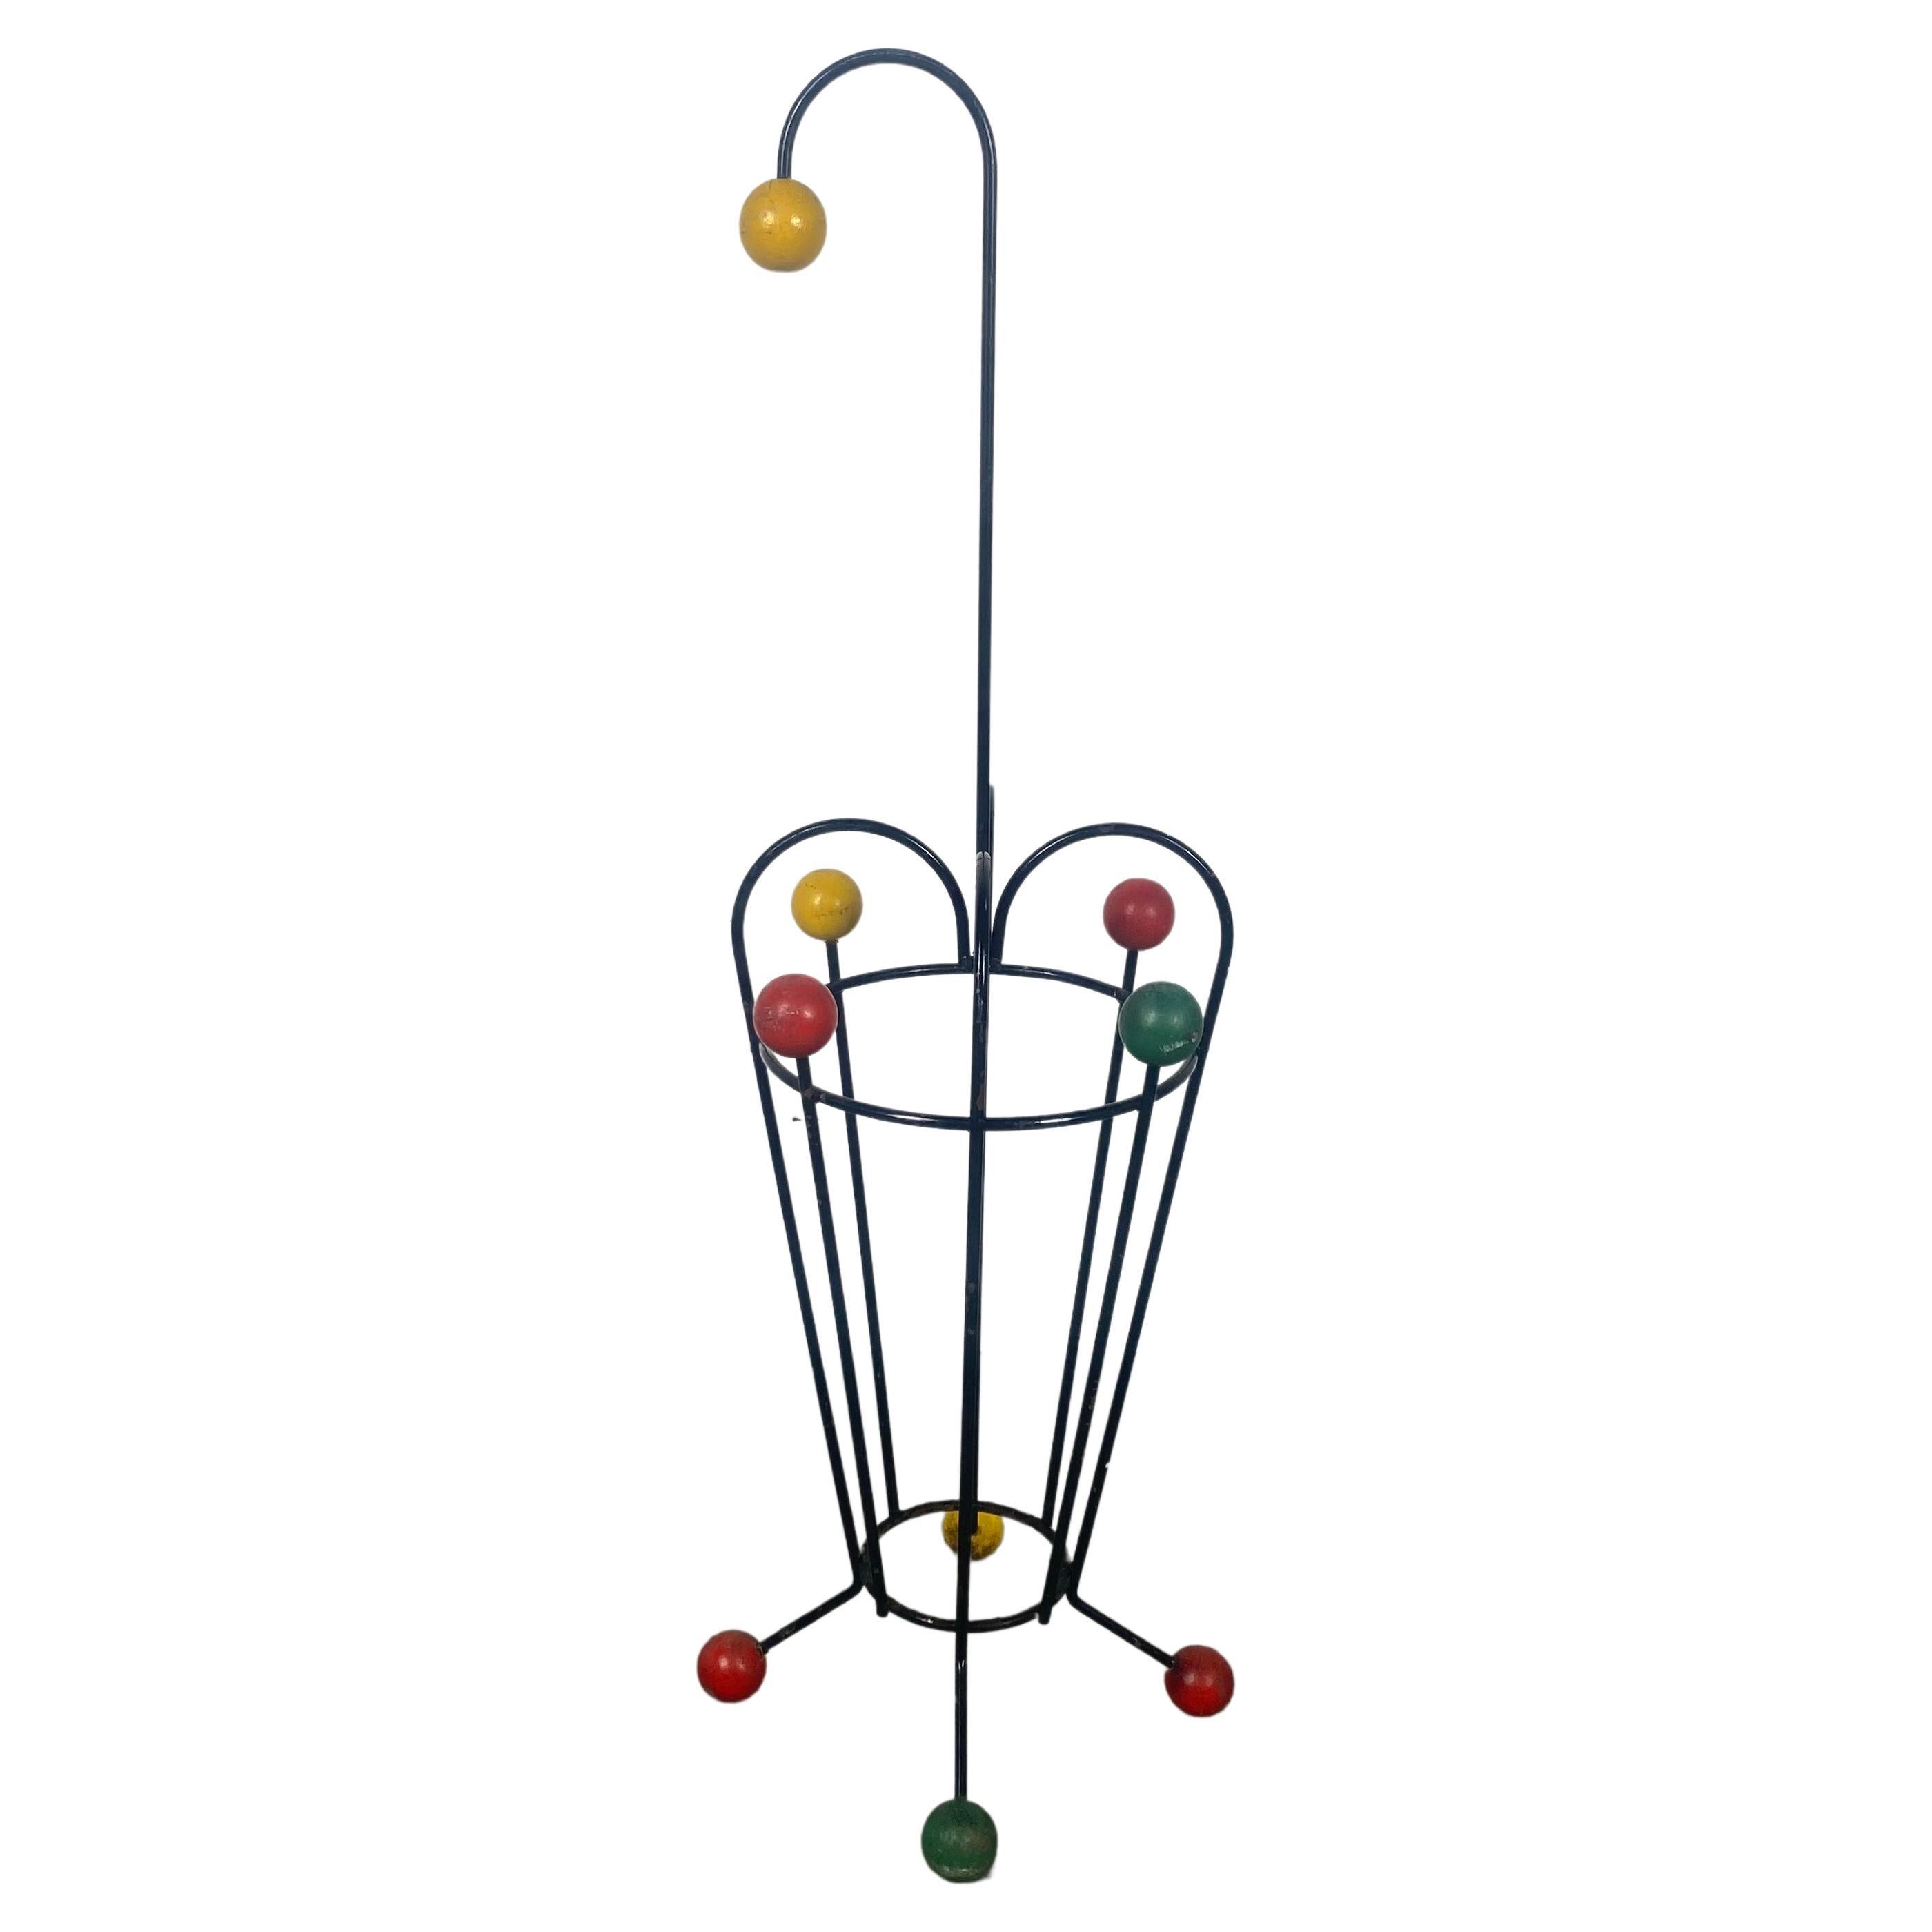 Porte-parapluies de conception atomique classique et moderniste franais, boules en fer et couleurs